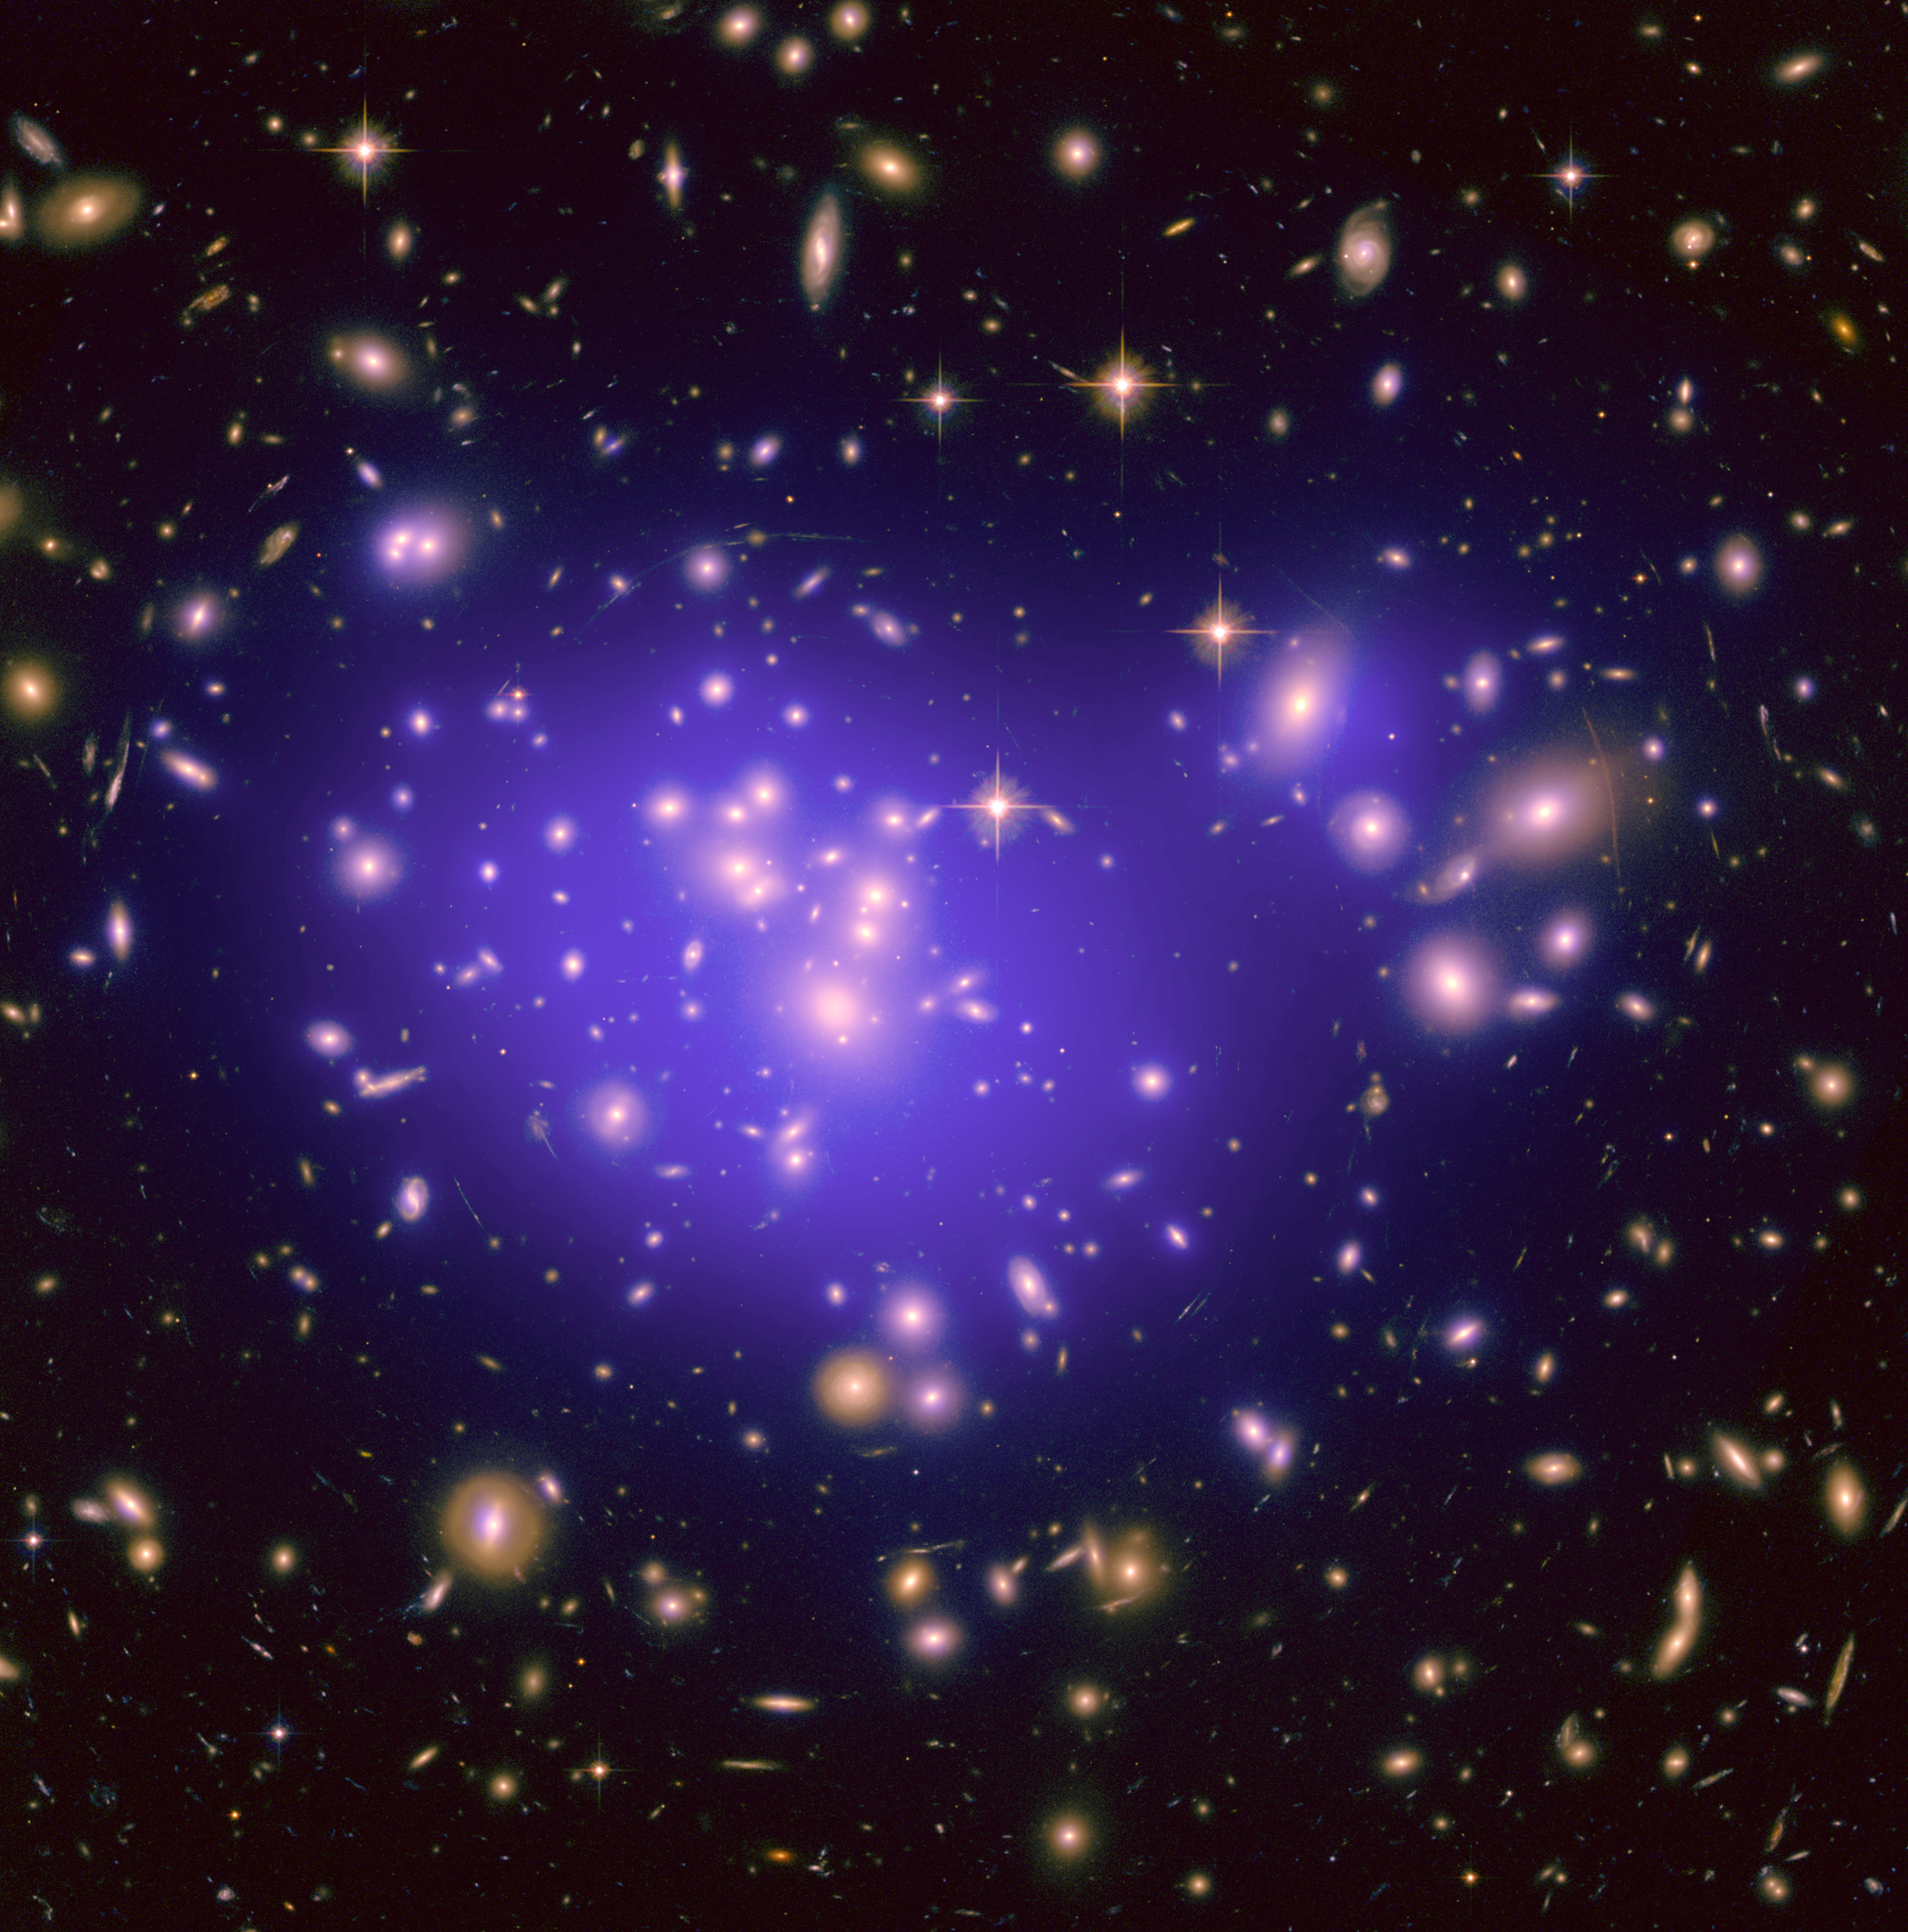 Skoplenie galaktik Abel' 1689 prolivaet svet na temnuyu Vselennuyu